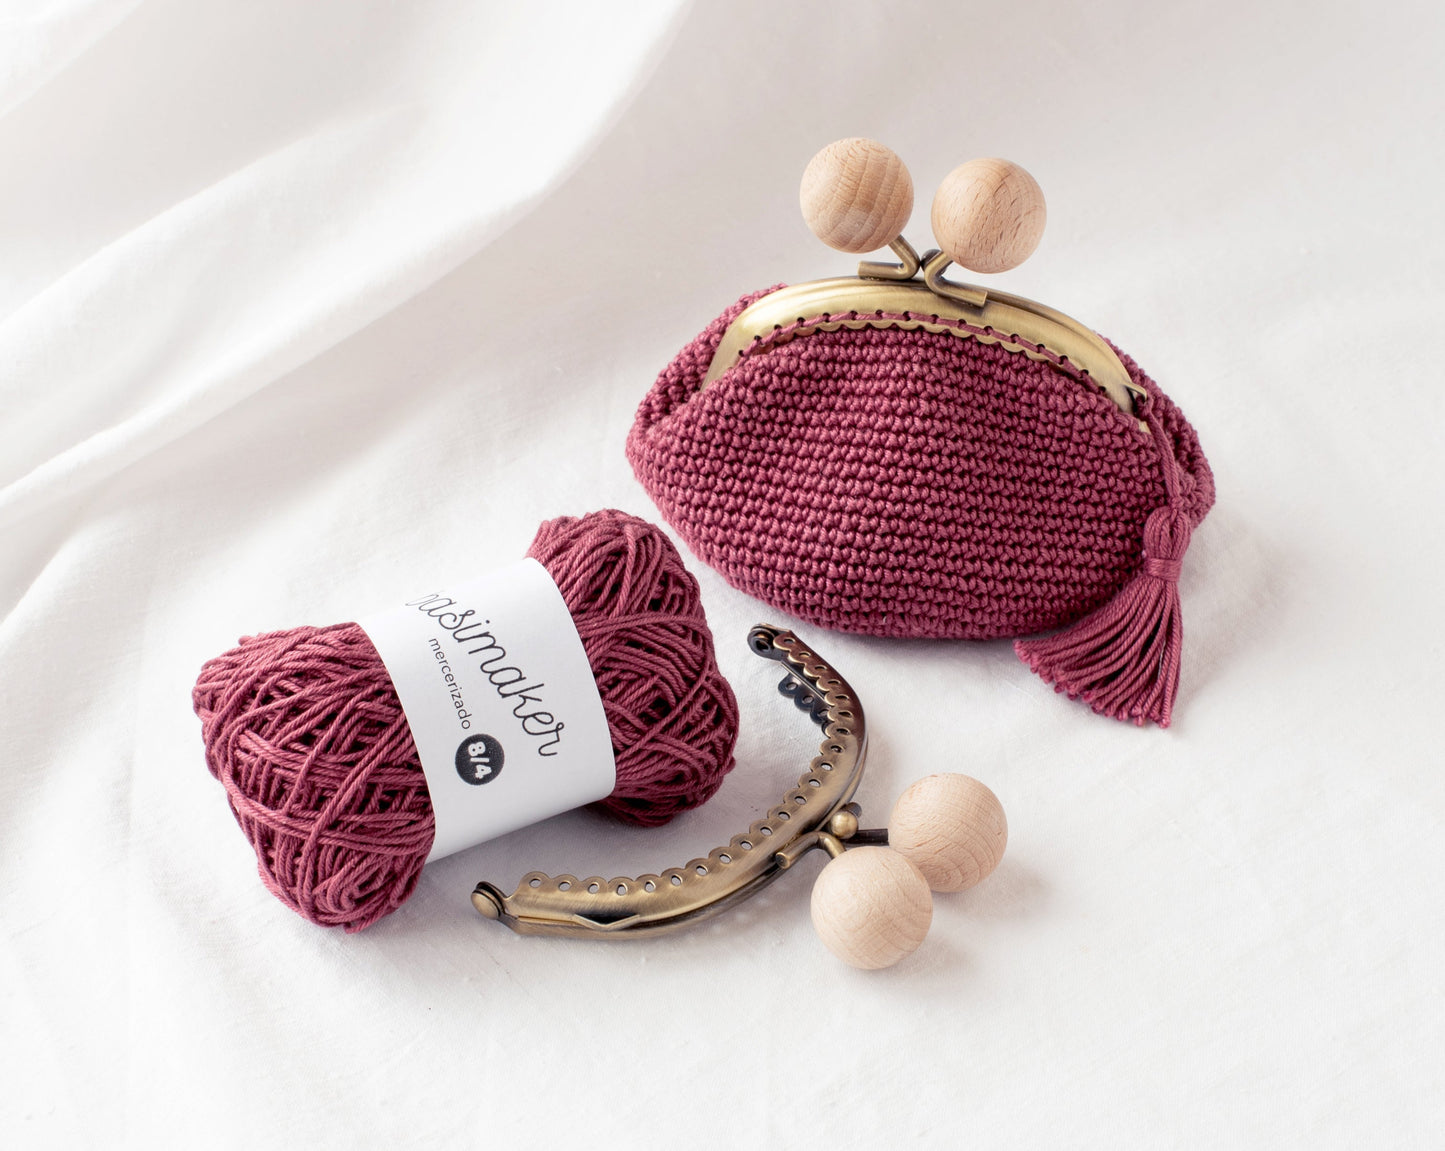 Kit de crochet para hacer el monedero BASIC con boquilla redonda de 8.5cm, nivel FÁCIL